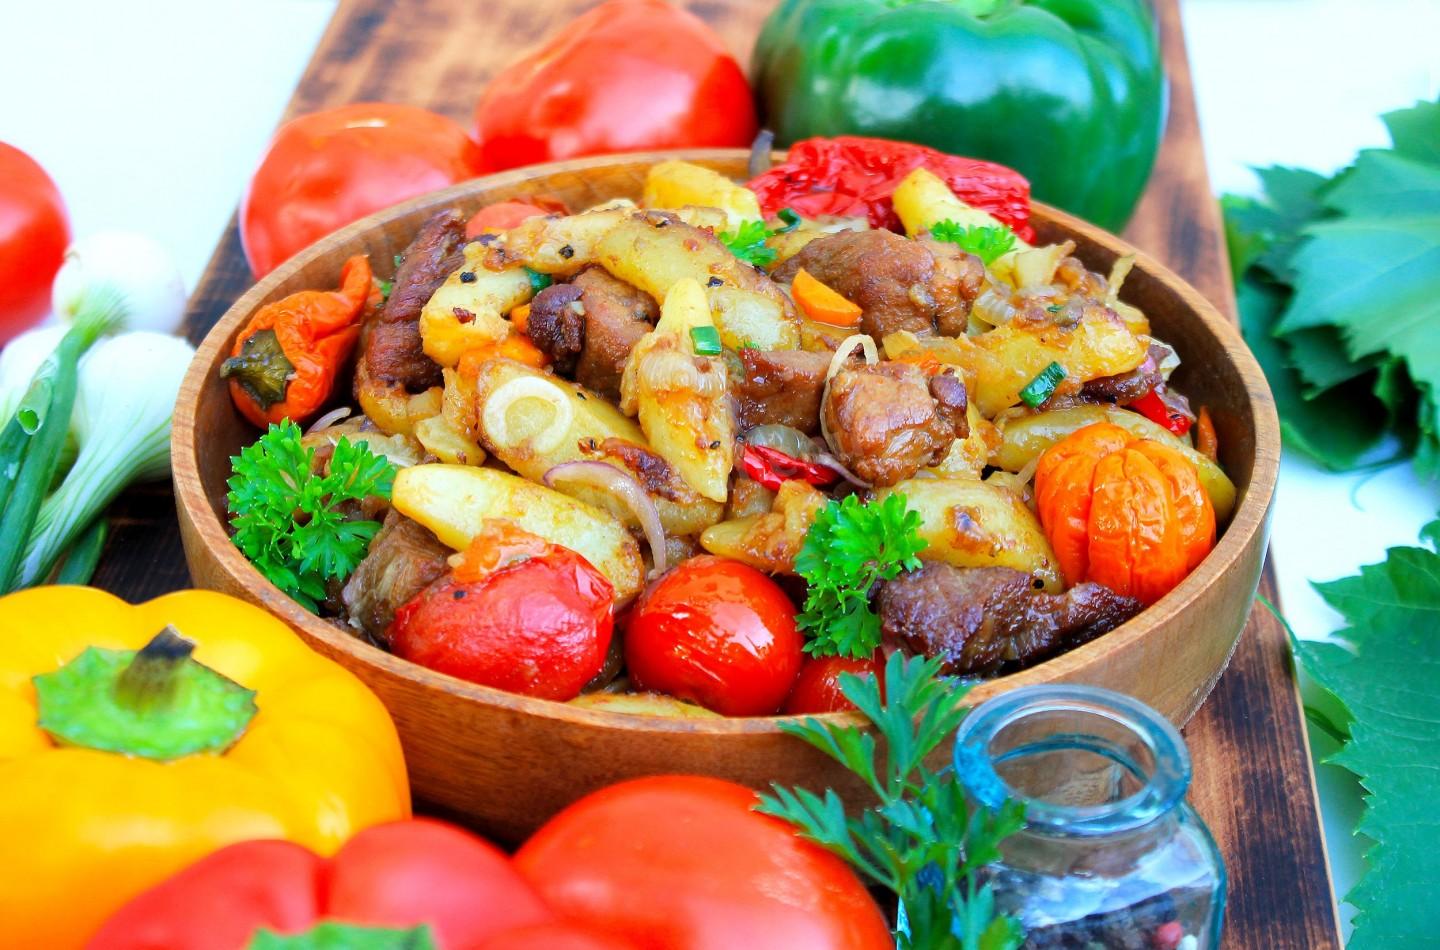 Мясо с картошкой в казане на костре с овощами рецепт фото